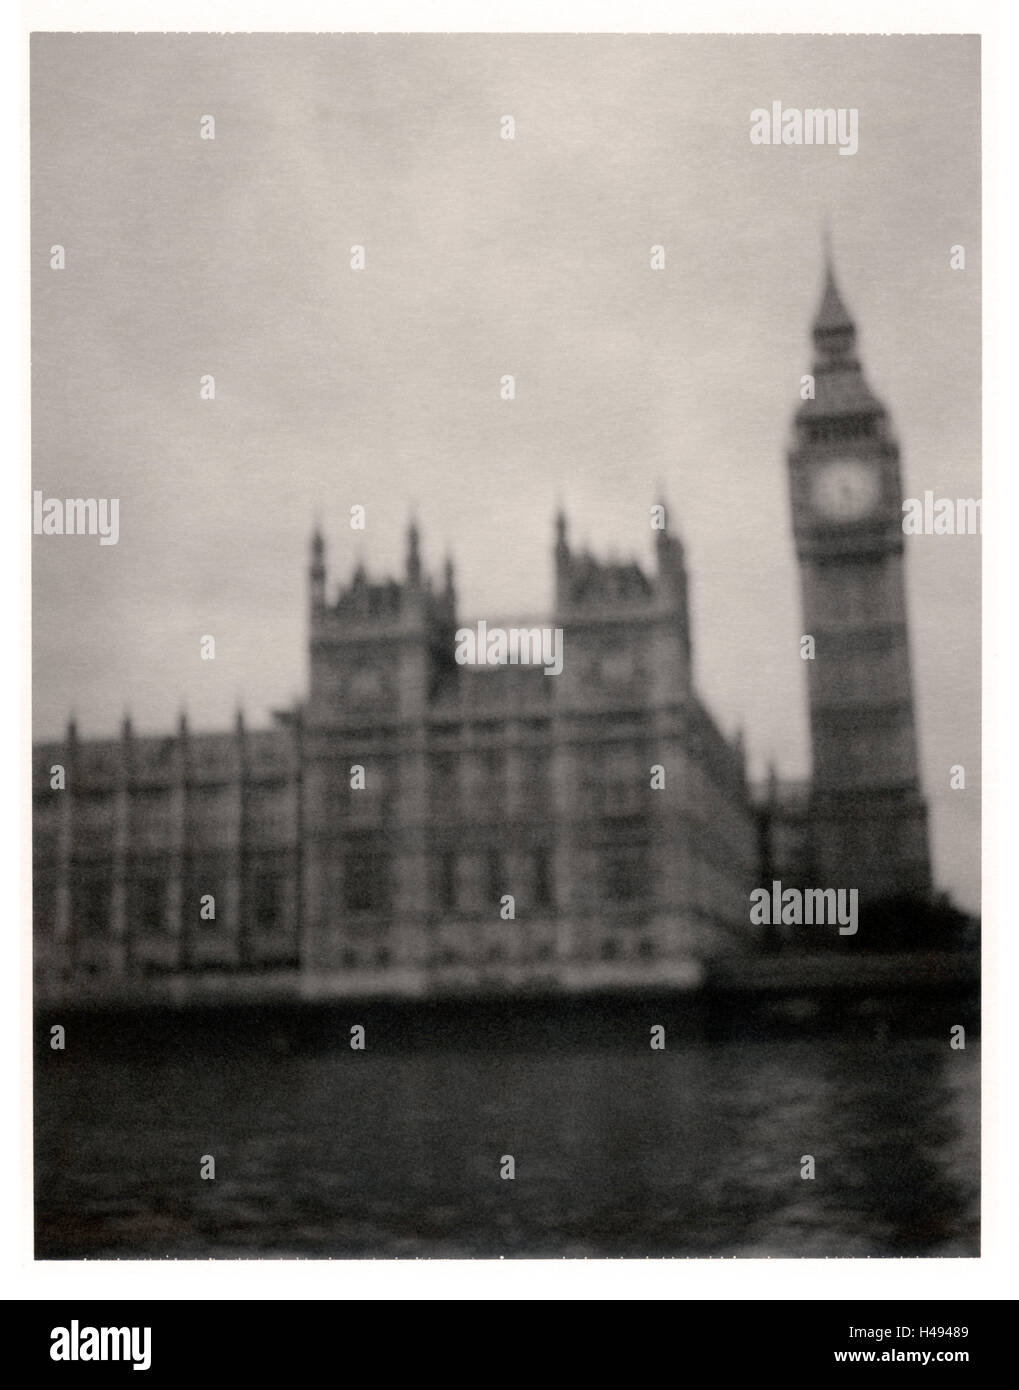 Londres, la Tamise, Big Ben et des chambres du Parlement, photographie polaroïd, Banque D'Images